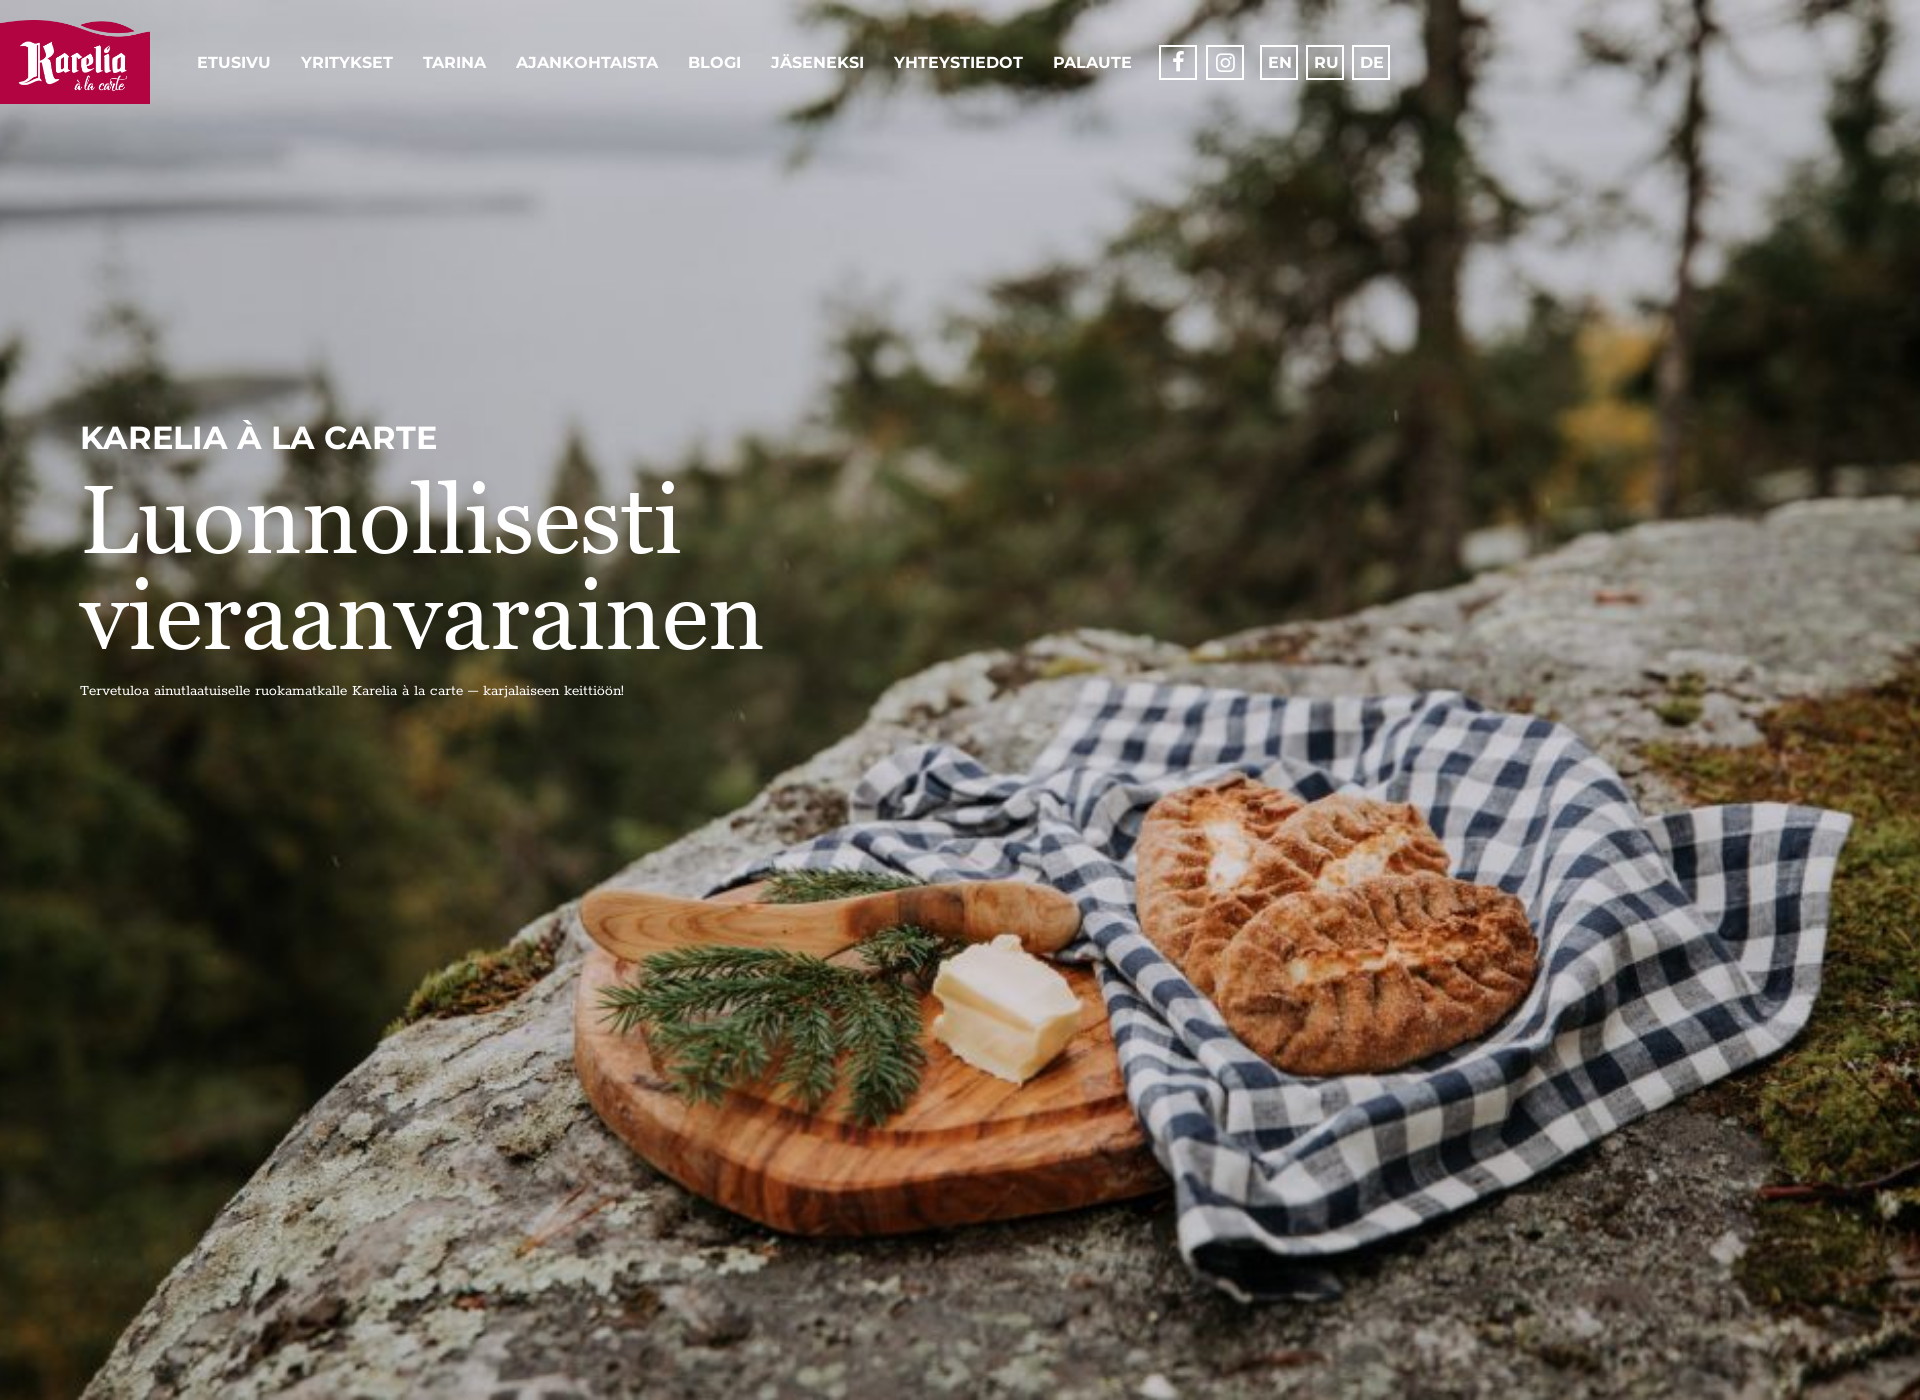 Näyttökuva kareliaalacarte.fi